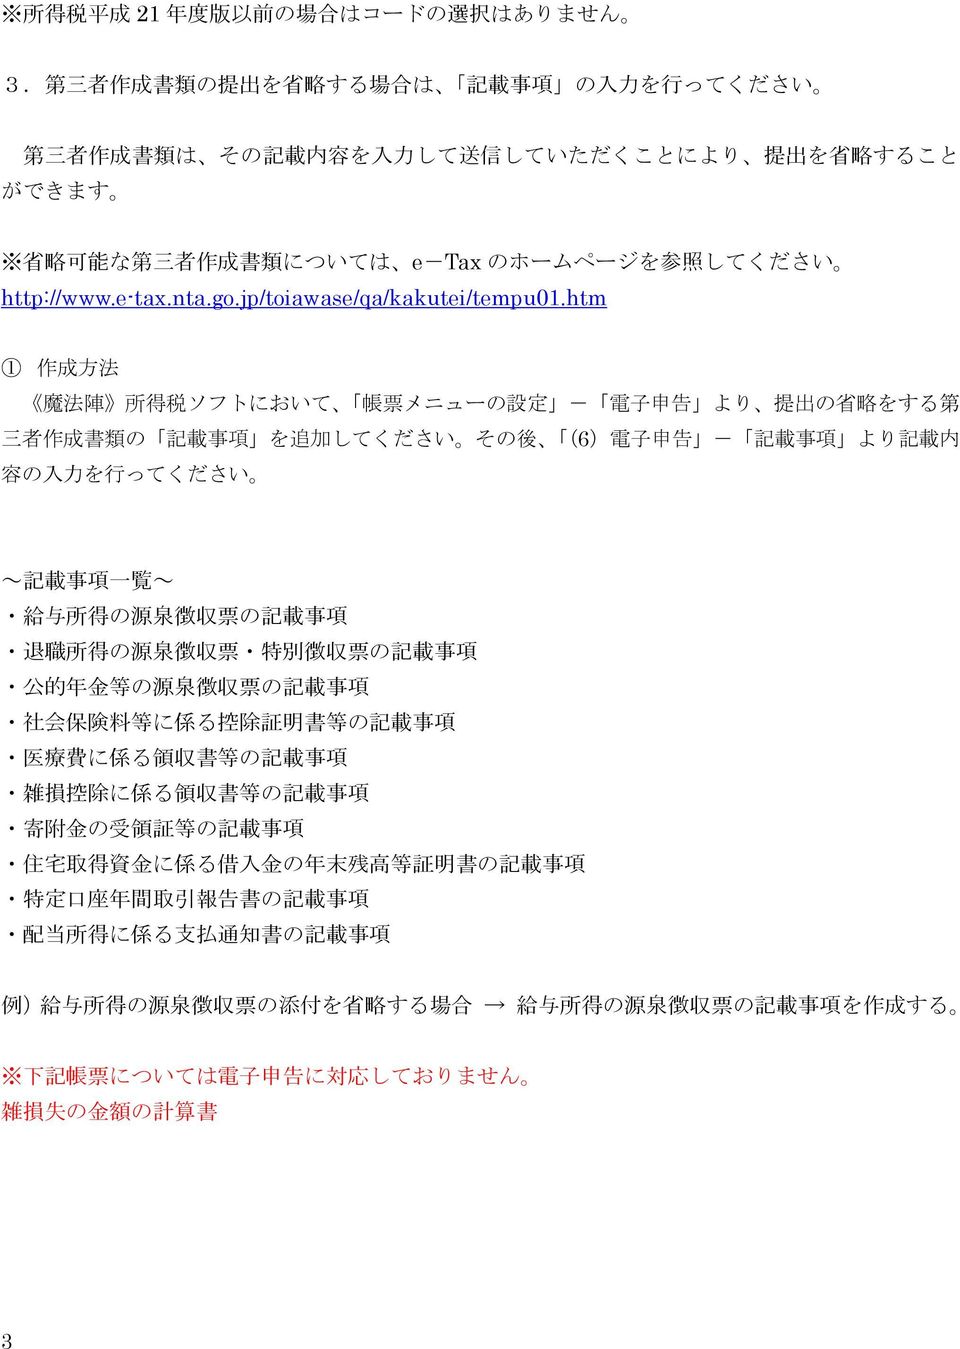 e-tax.nta.go.jp/toiawase/qa/kakutei/tempu01.